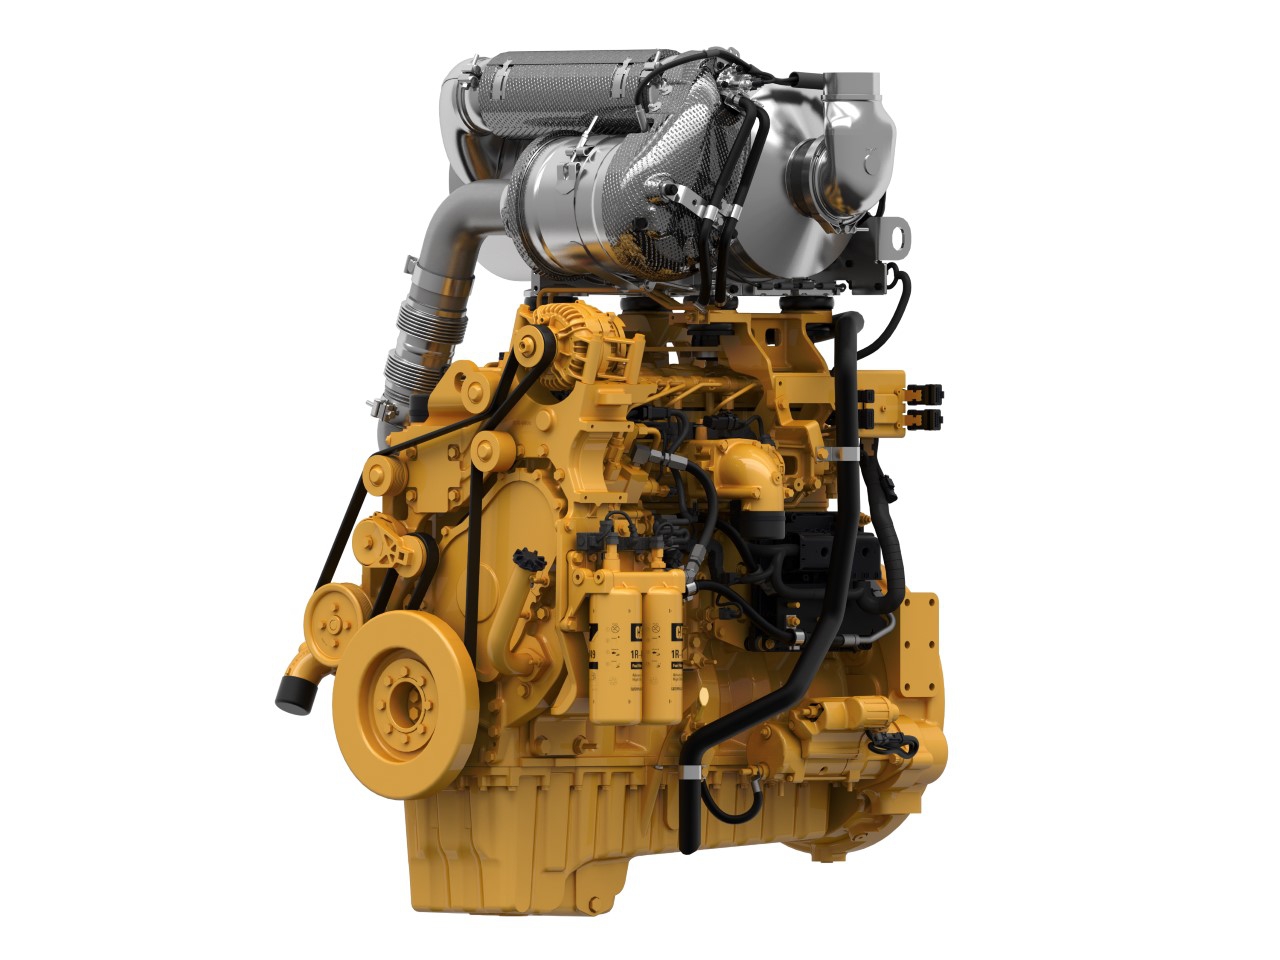 Priemyslený motor Cat C9.3B - 250-340 kW